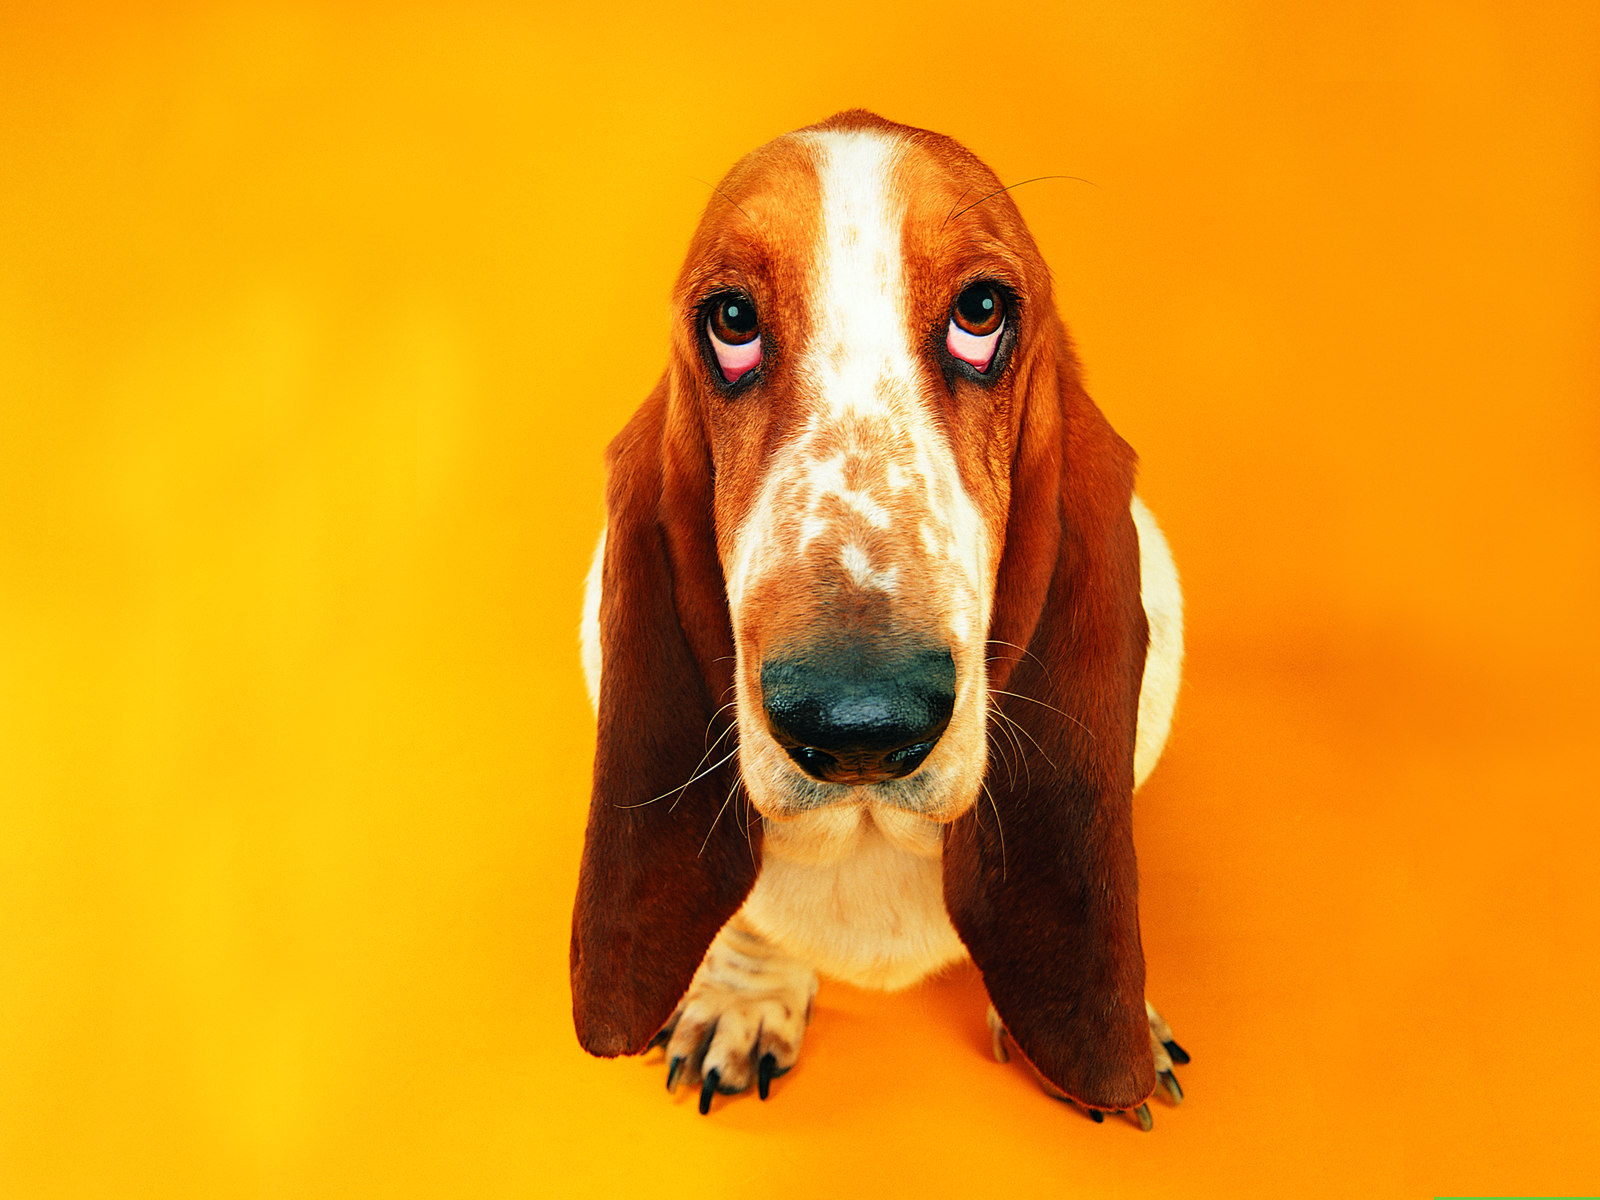 Animals Dogs Cute basset hound on an orange background 049595